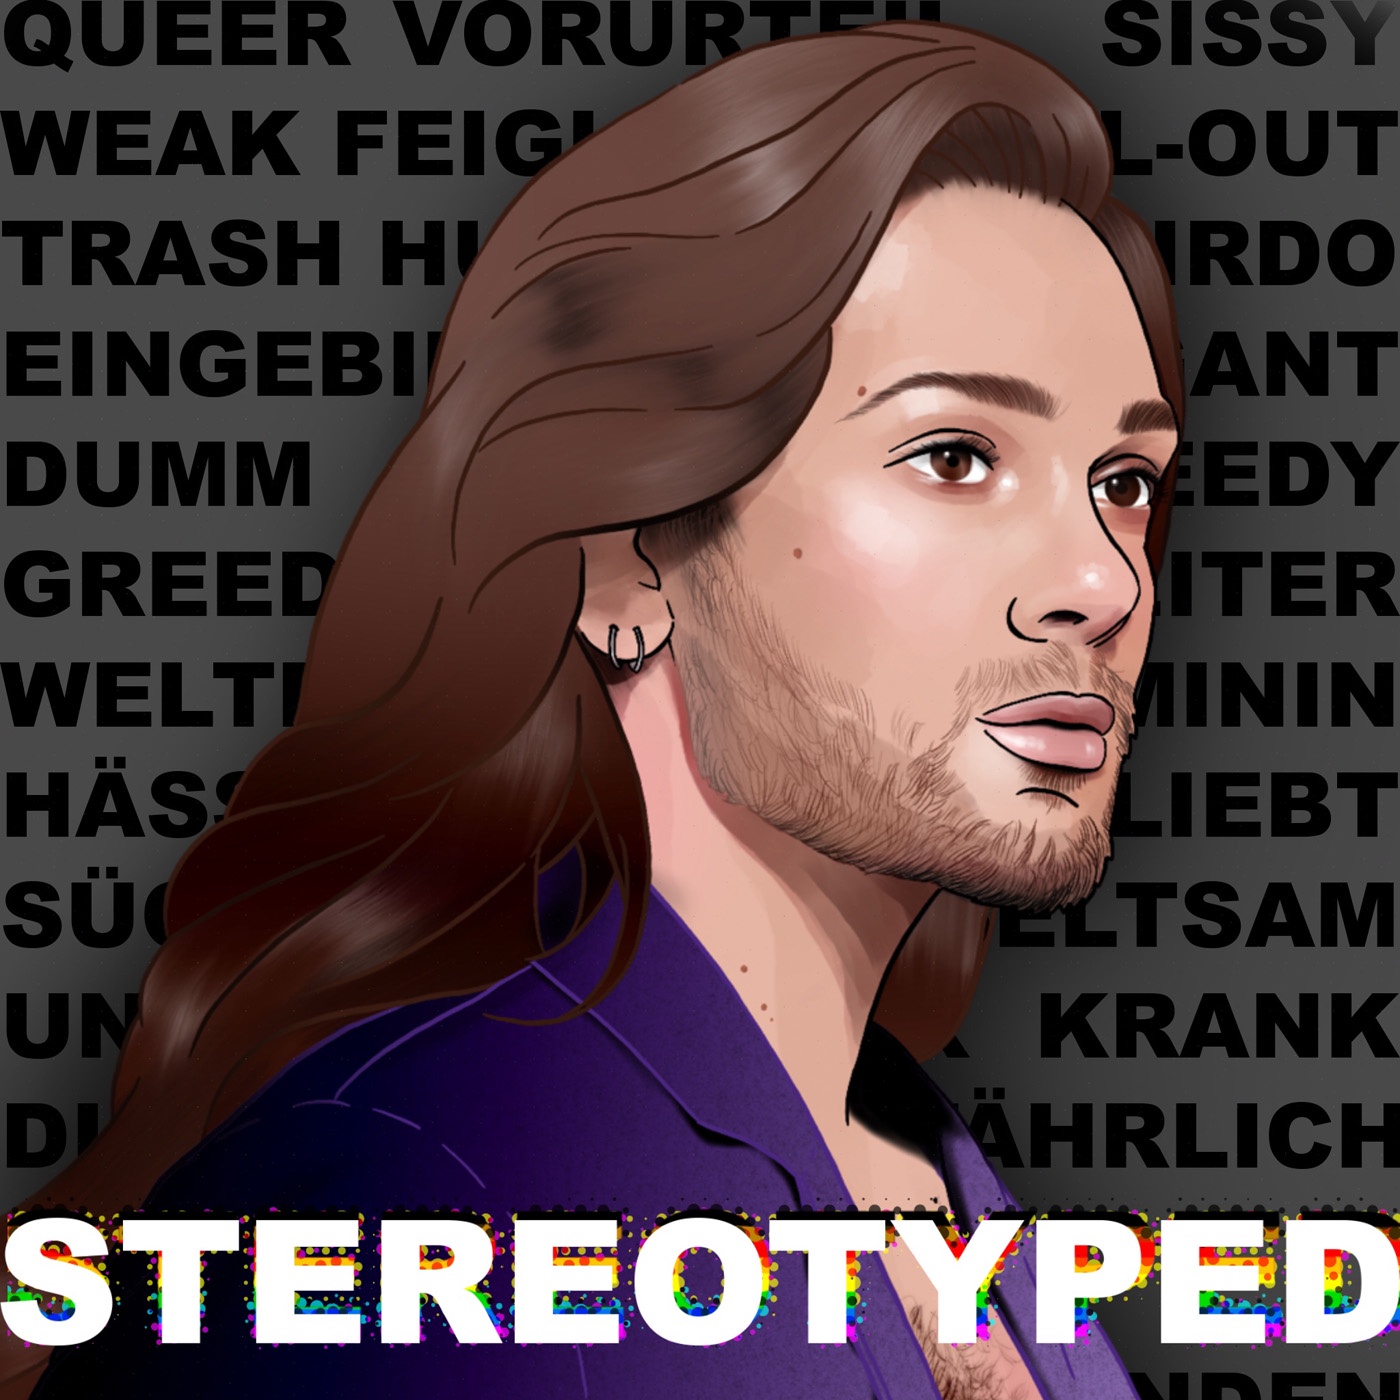 Stereotyped - Ein unzensiertes Gespräch über Vorurteile und Schubladendenken